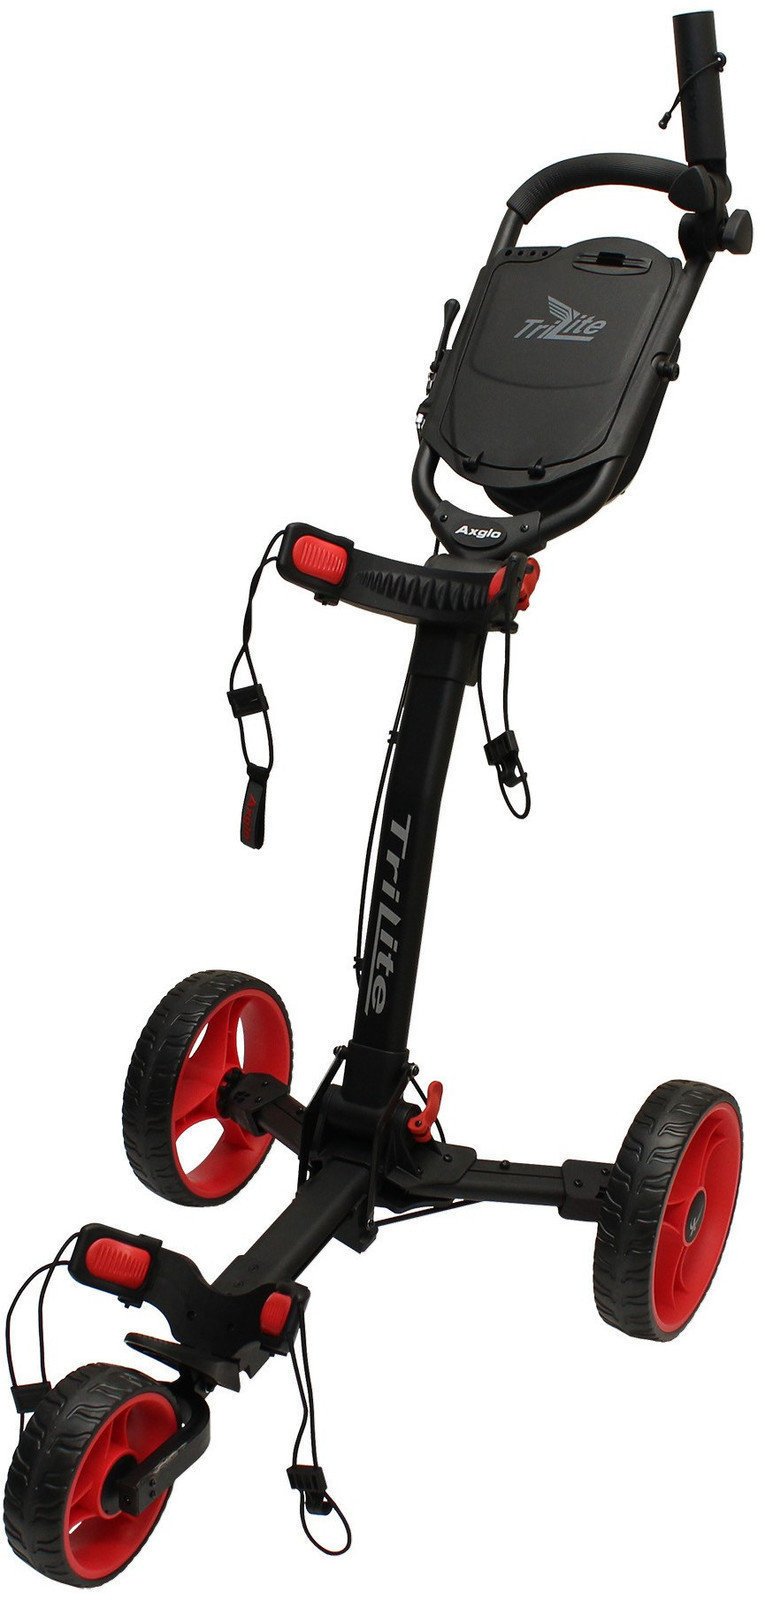 Wózek golfowy ręczny Axglo TriLite Black/Red Wózek golfowy ręczny